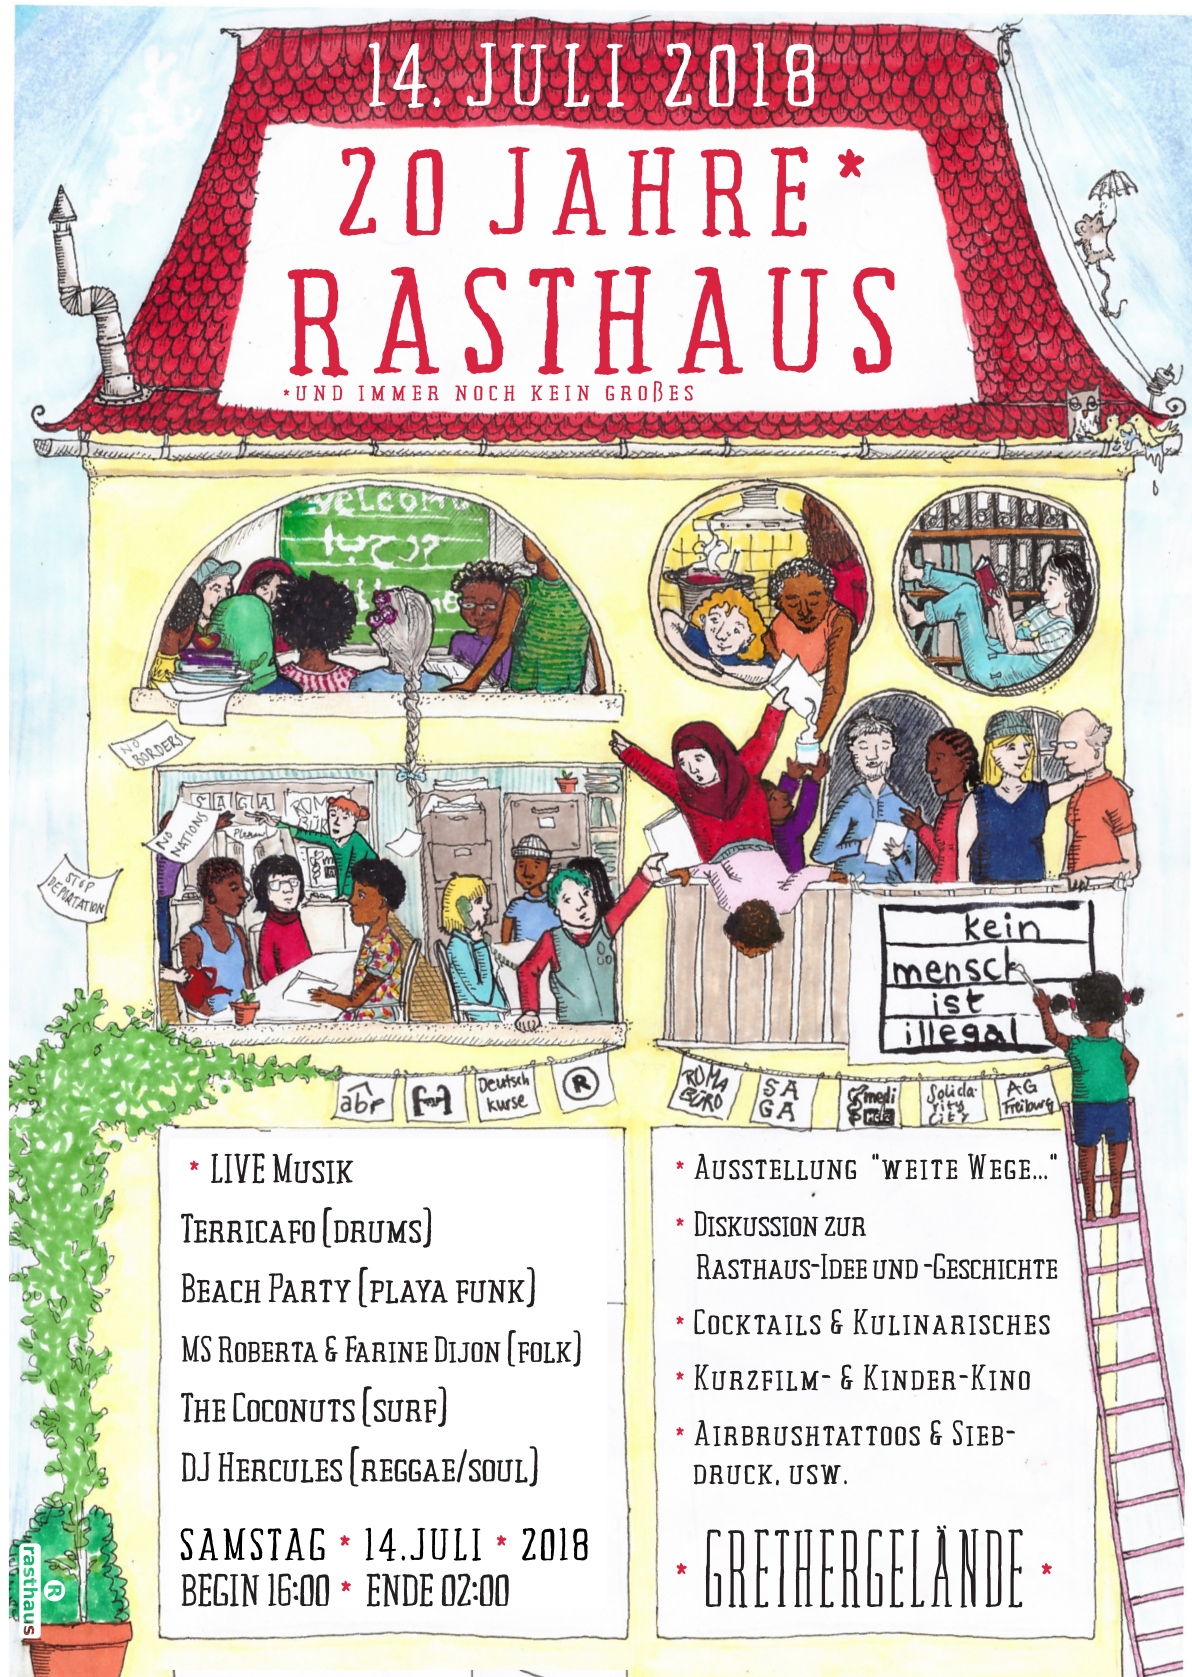 20 Jahre* Rasthaus! – Open Air am 14. Juli